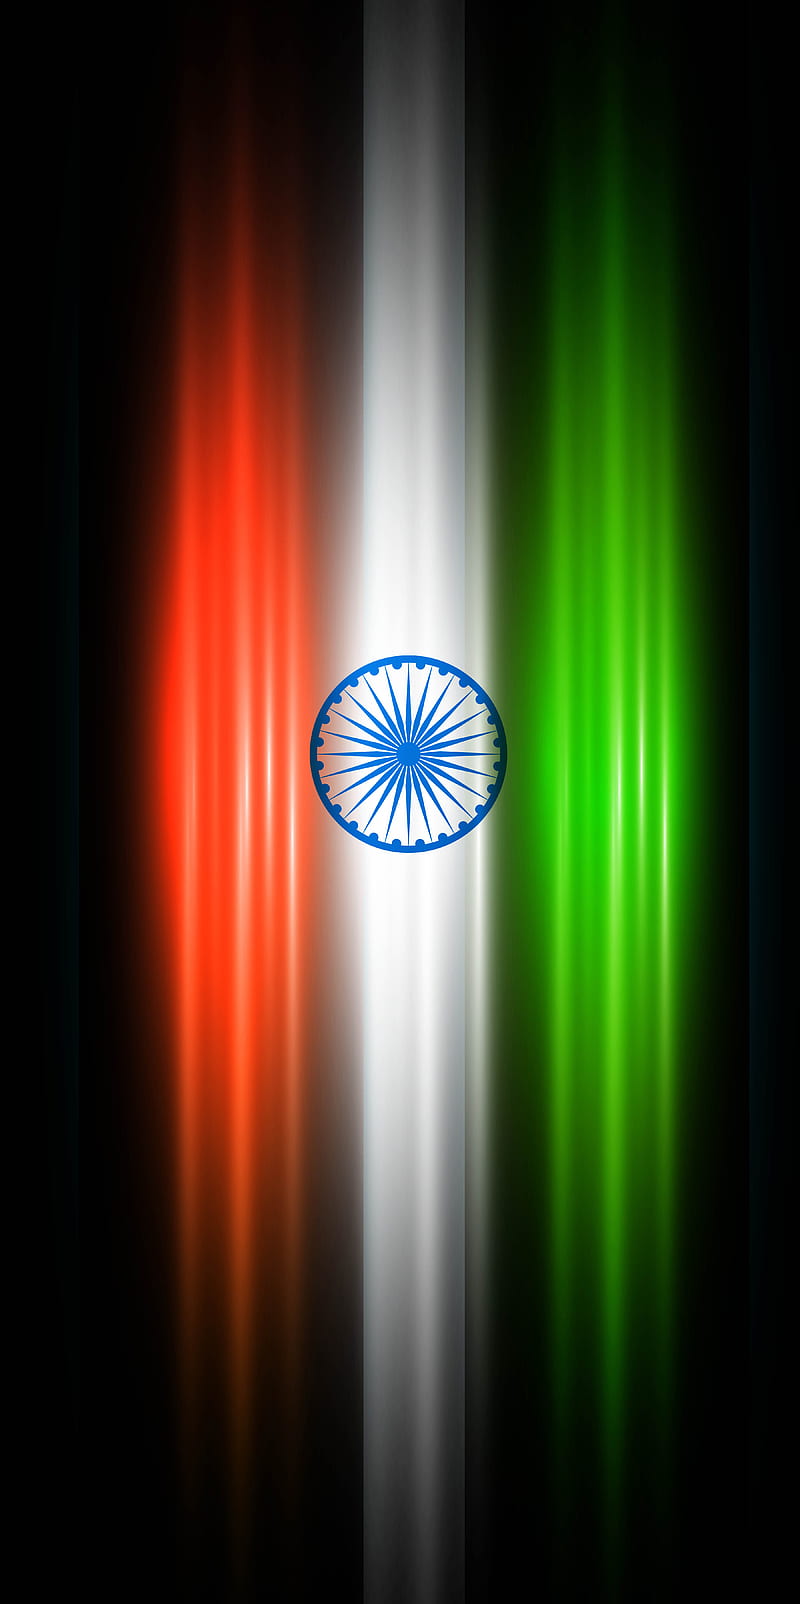  India Tiranga Flag Phone iPhone Mobile Background HD Images  CBEditz